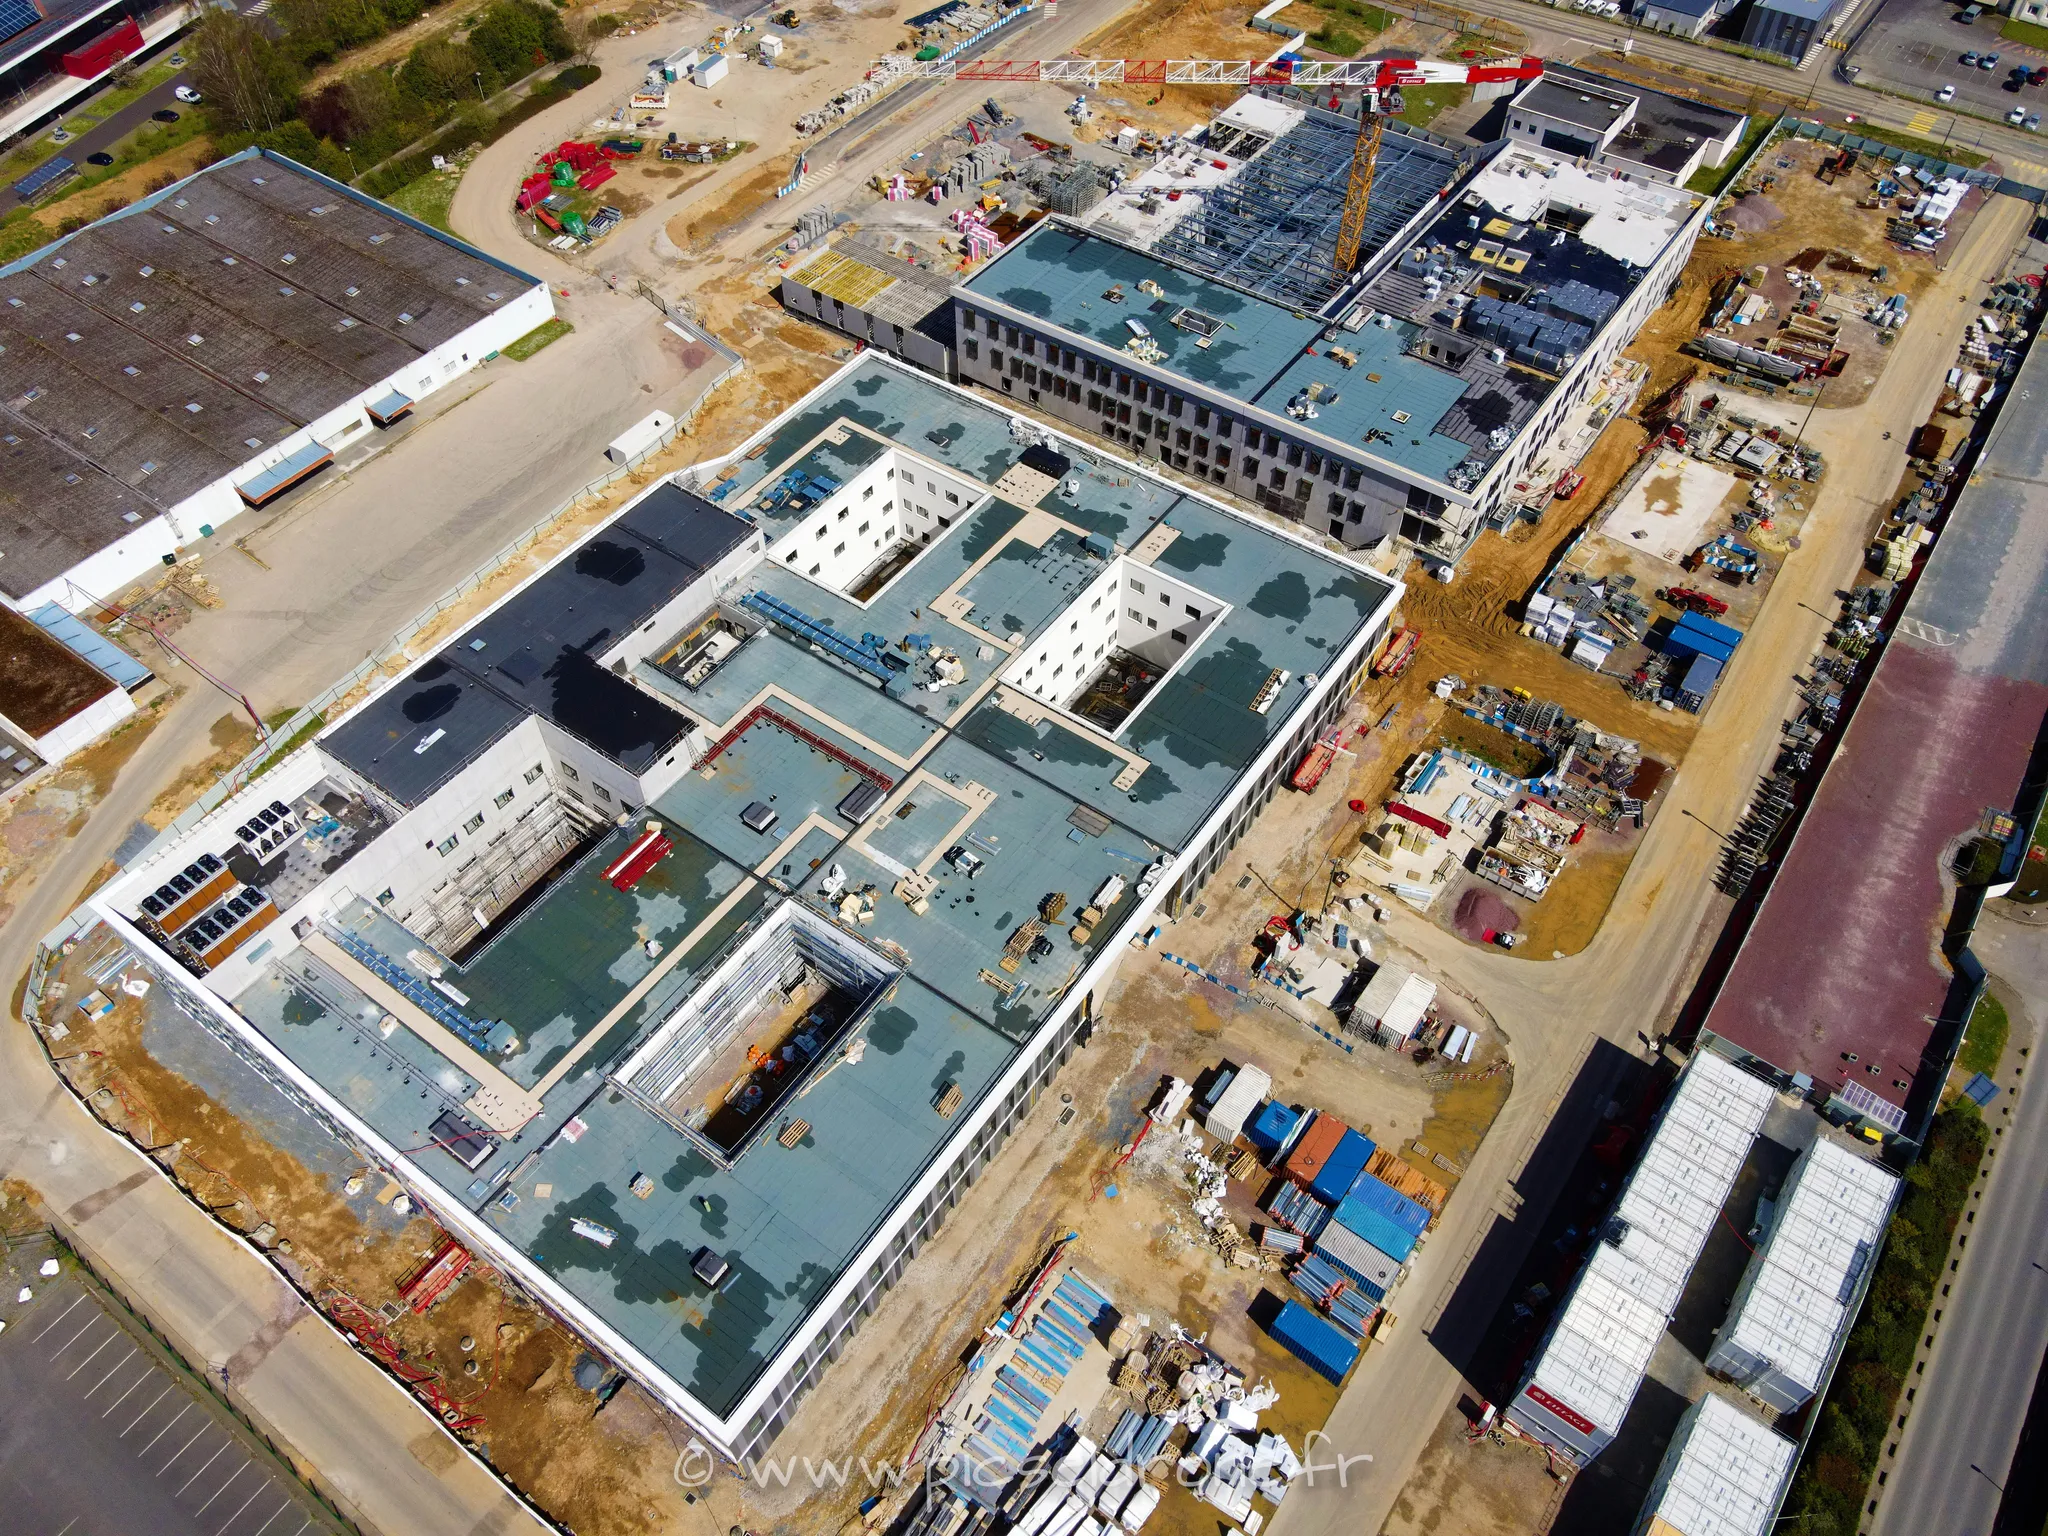 Prise de vue aérienne, photo aérienne de chantier CHU CAEN, EIFFAGE, télépilote drone, pilote drone, PICSEL DRONE, CAEN LA MER